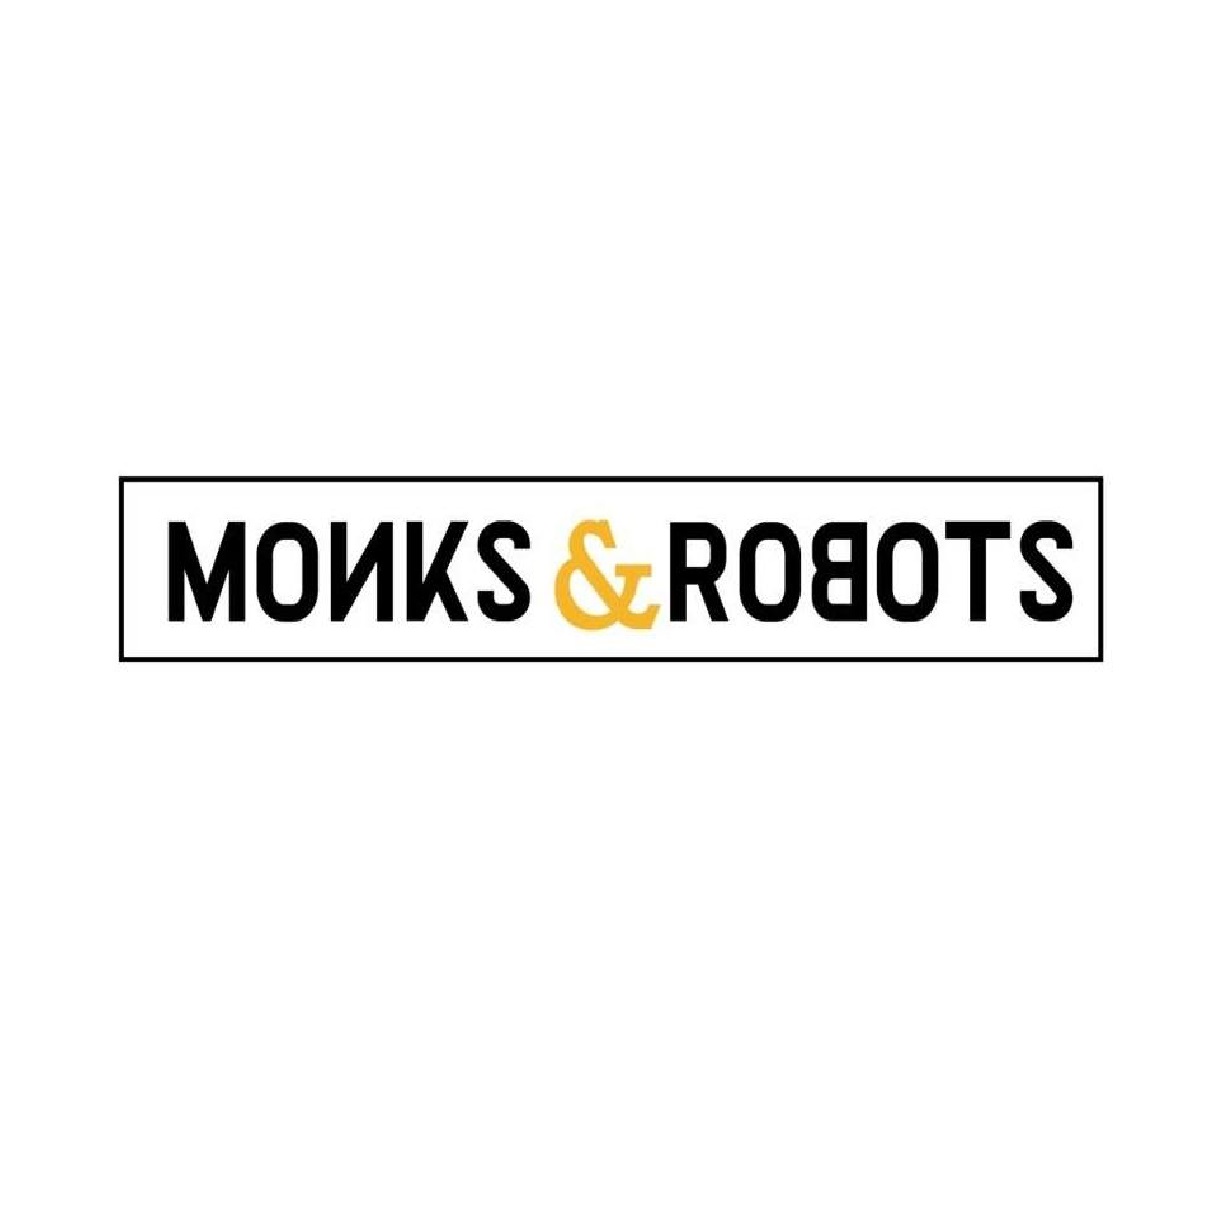 Monks & Robots